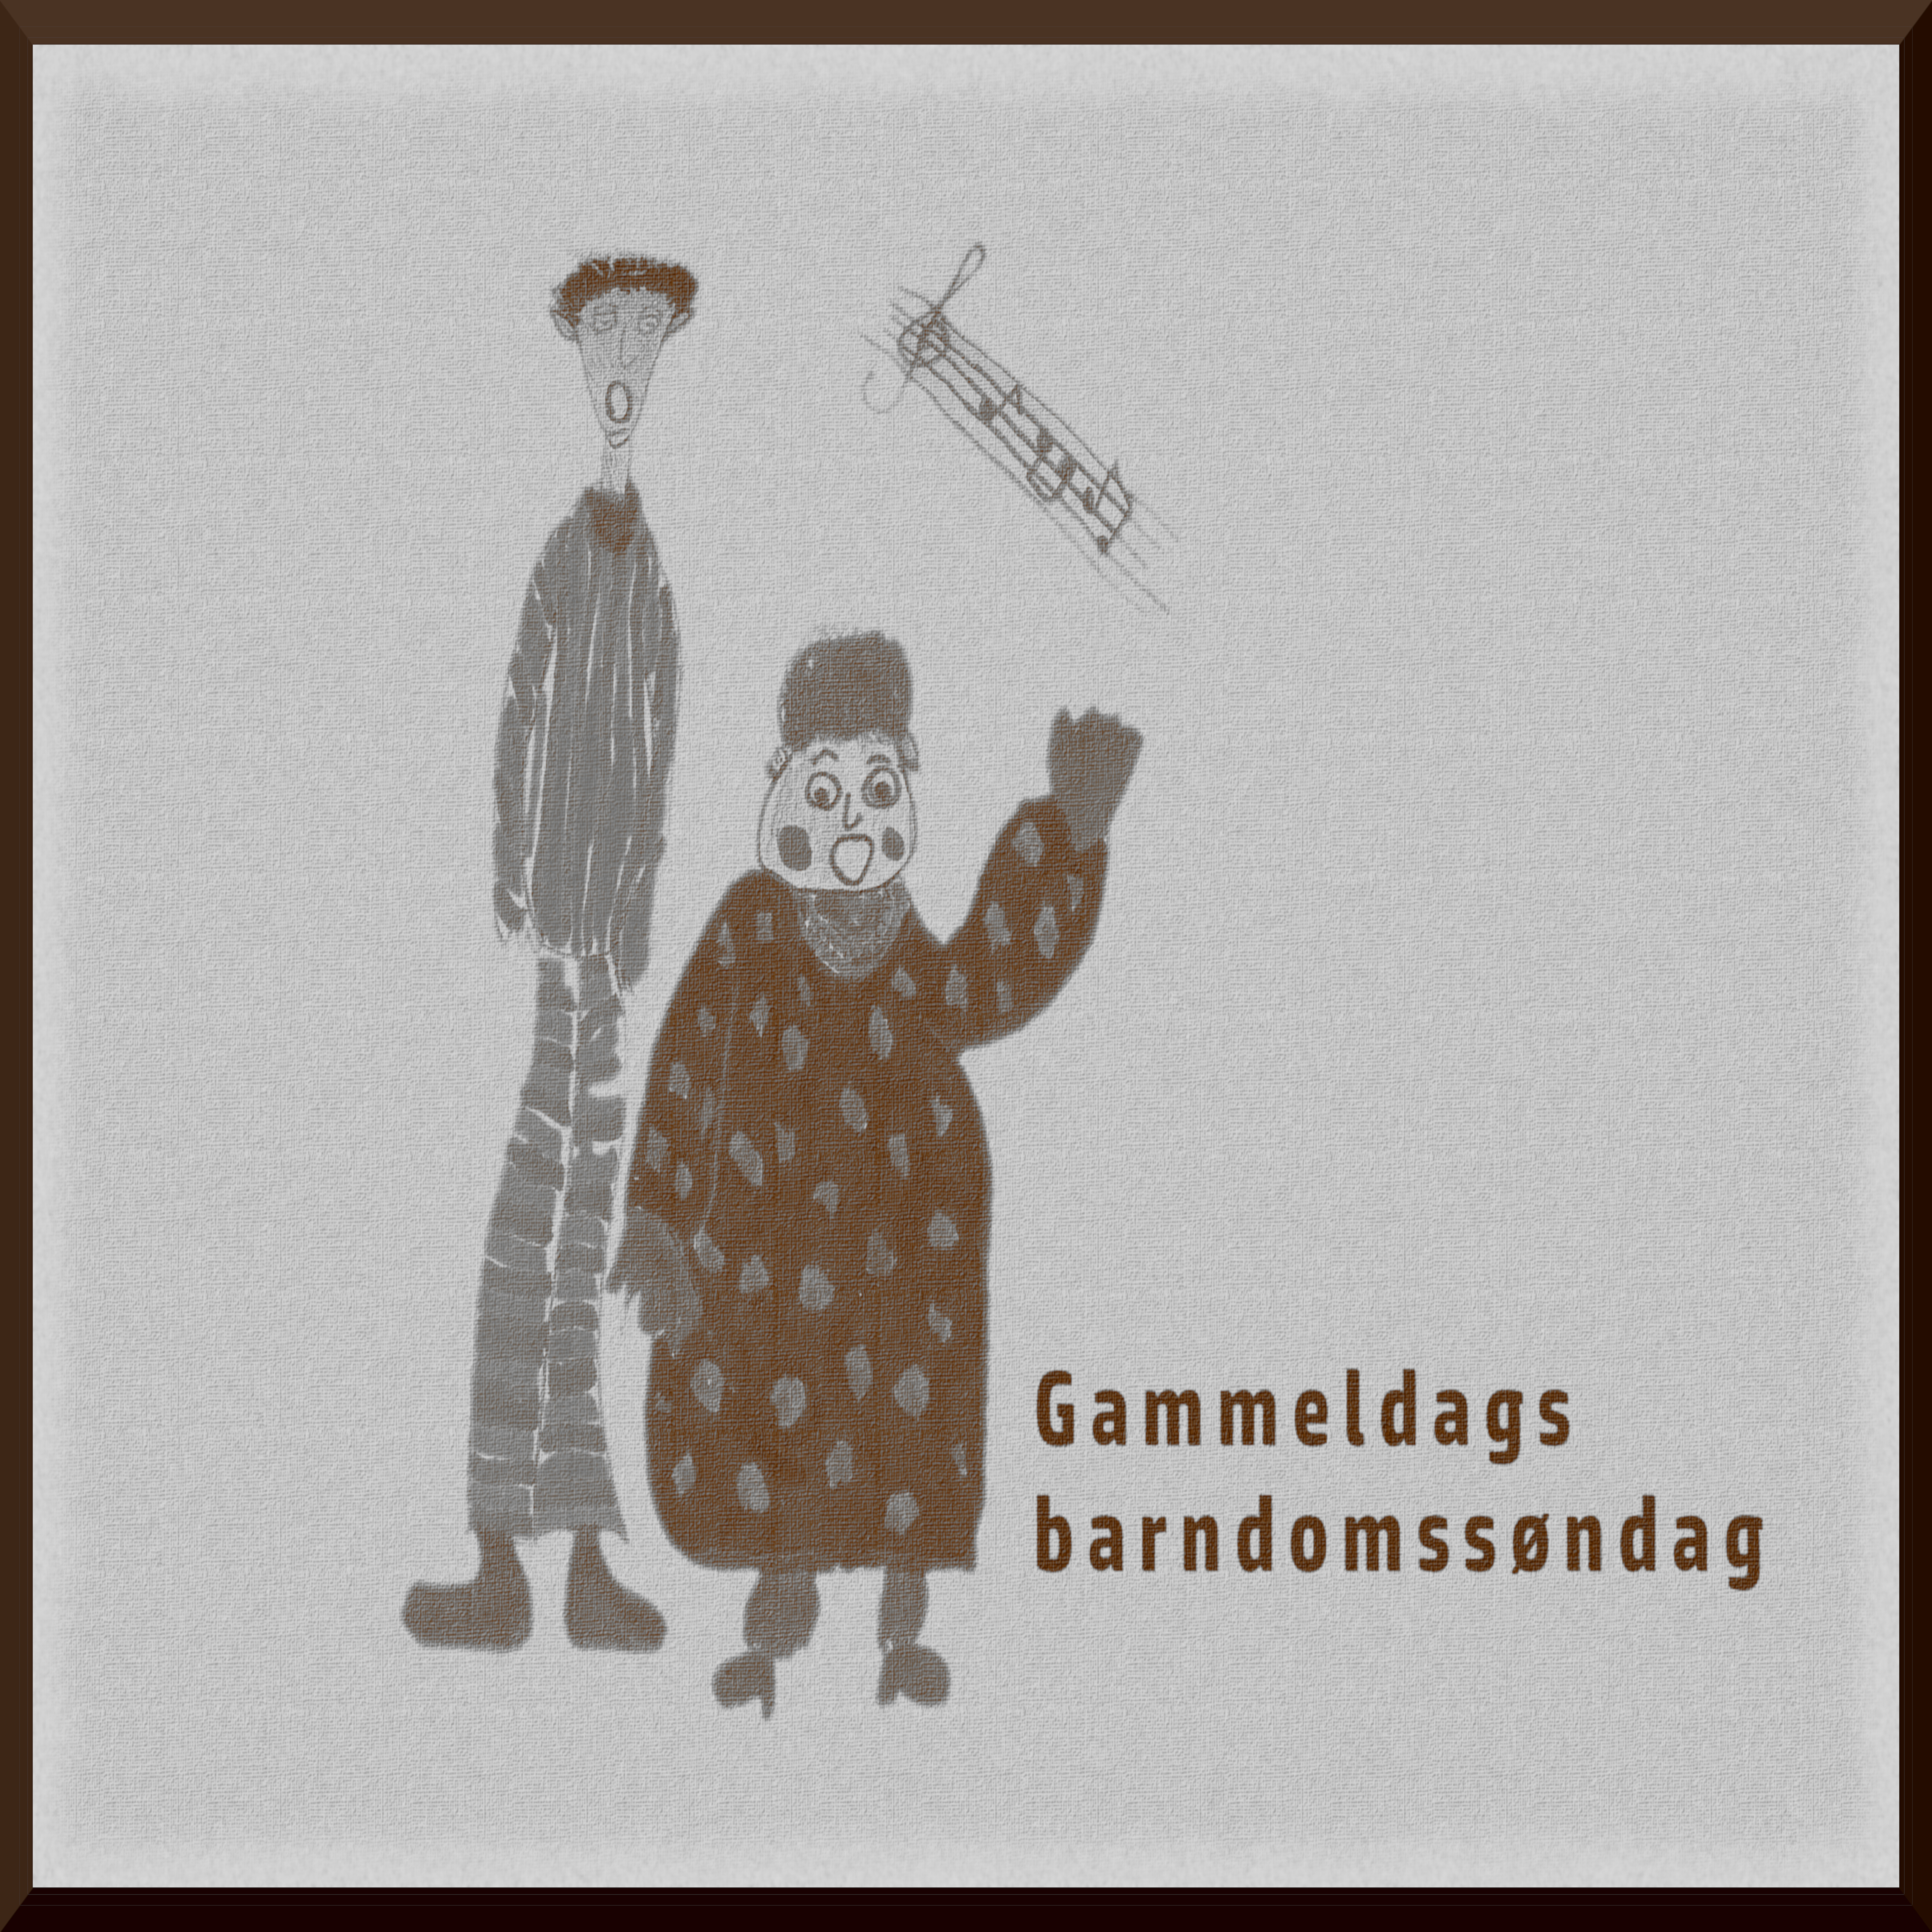 Bilde av cover til singelen Gammeldags barndomssøndag. Design ved Henriette Nilsson